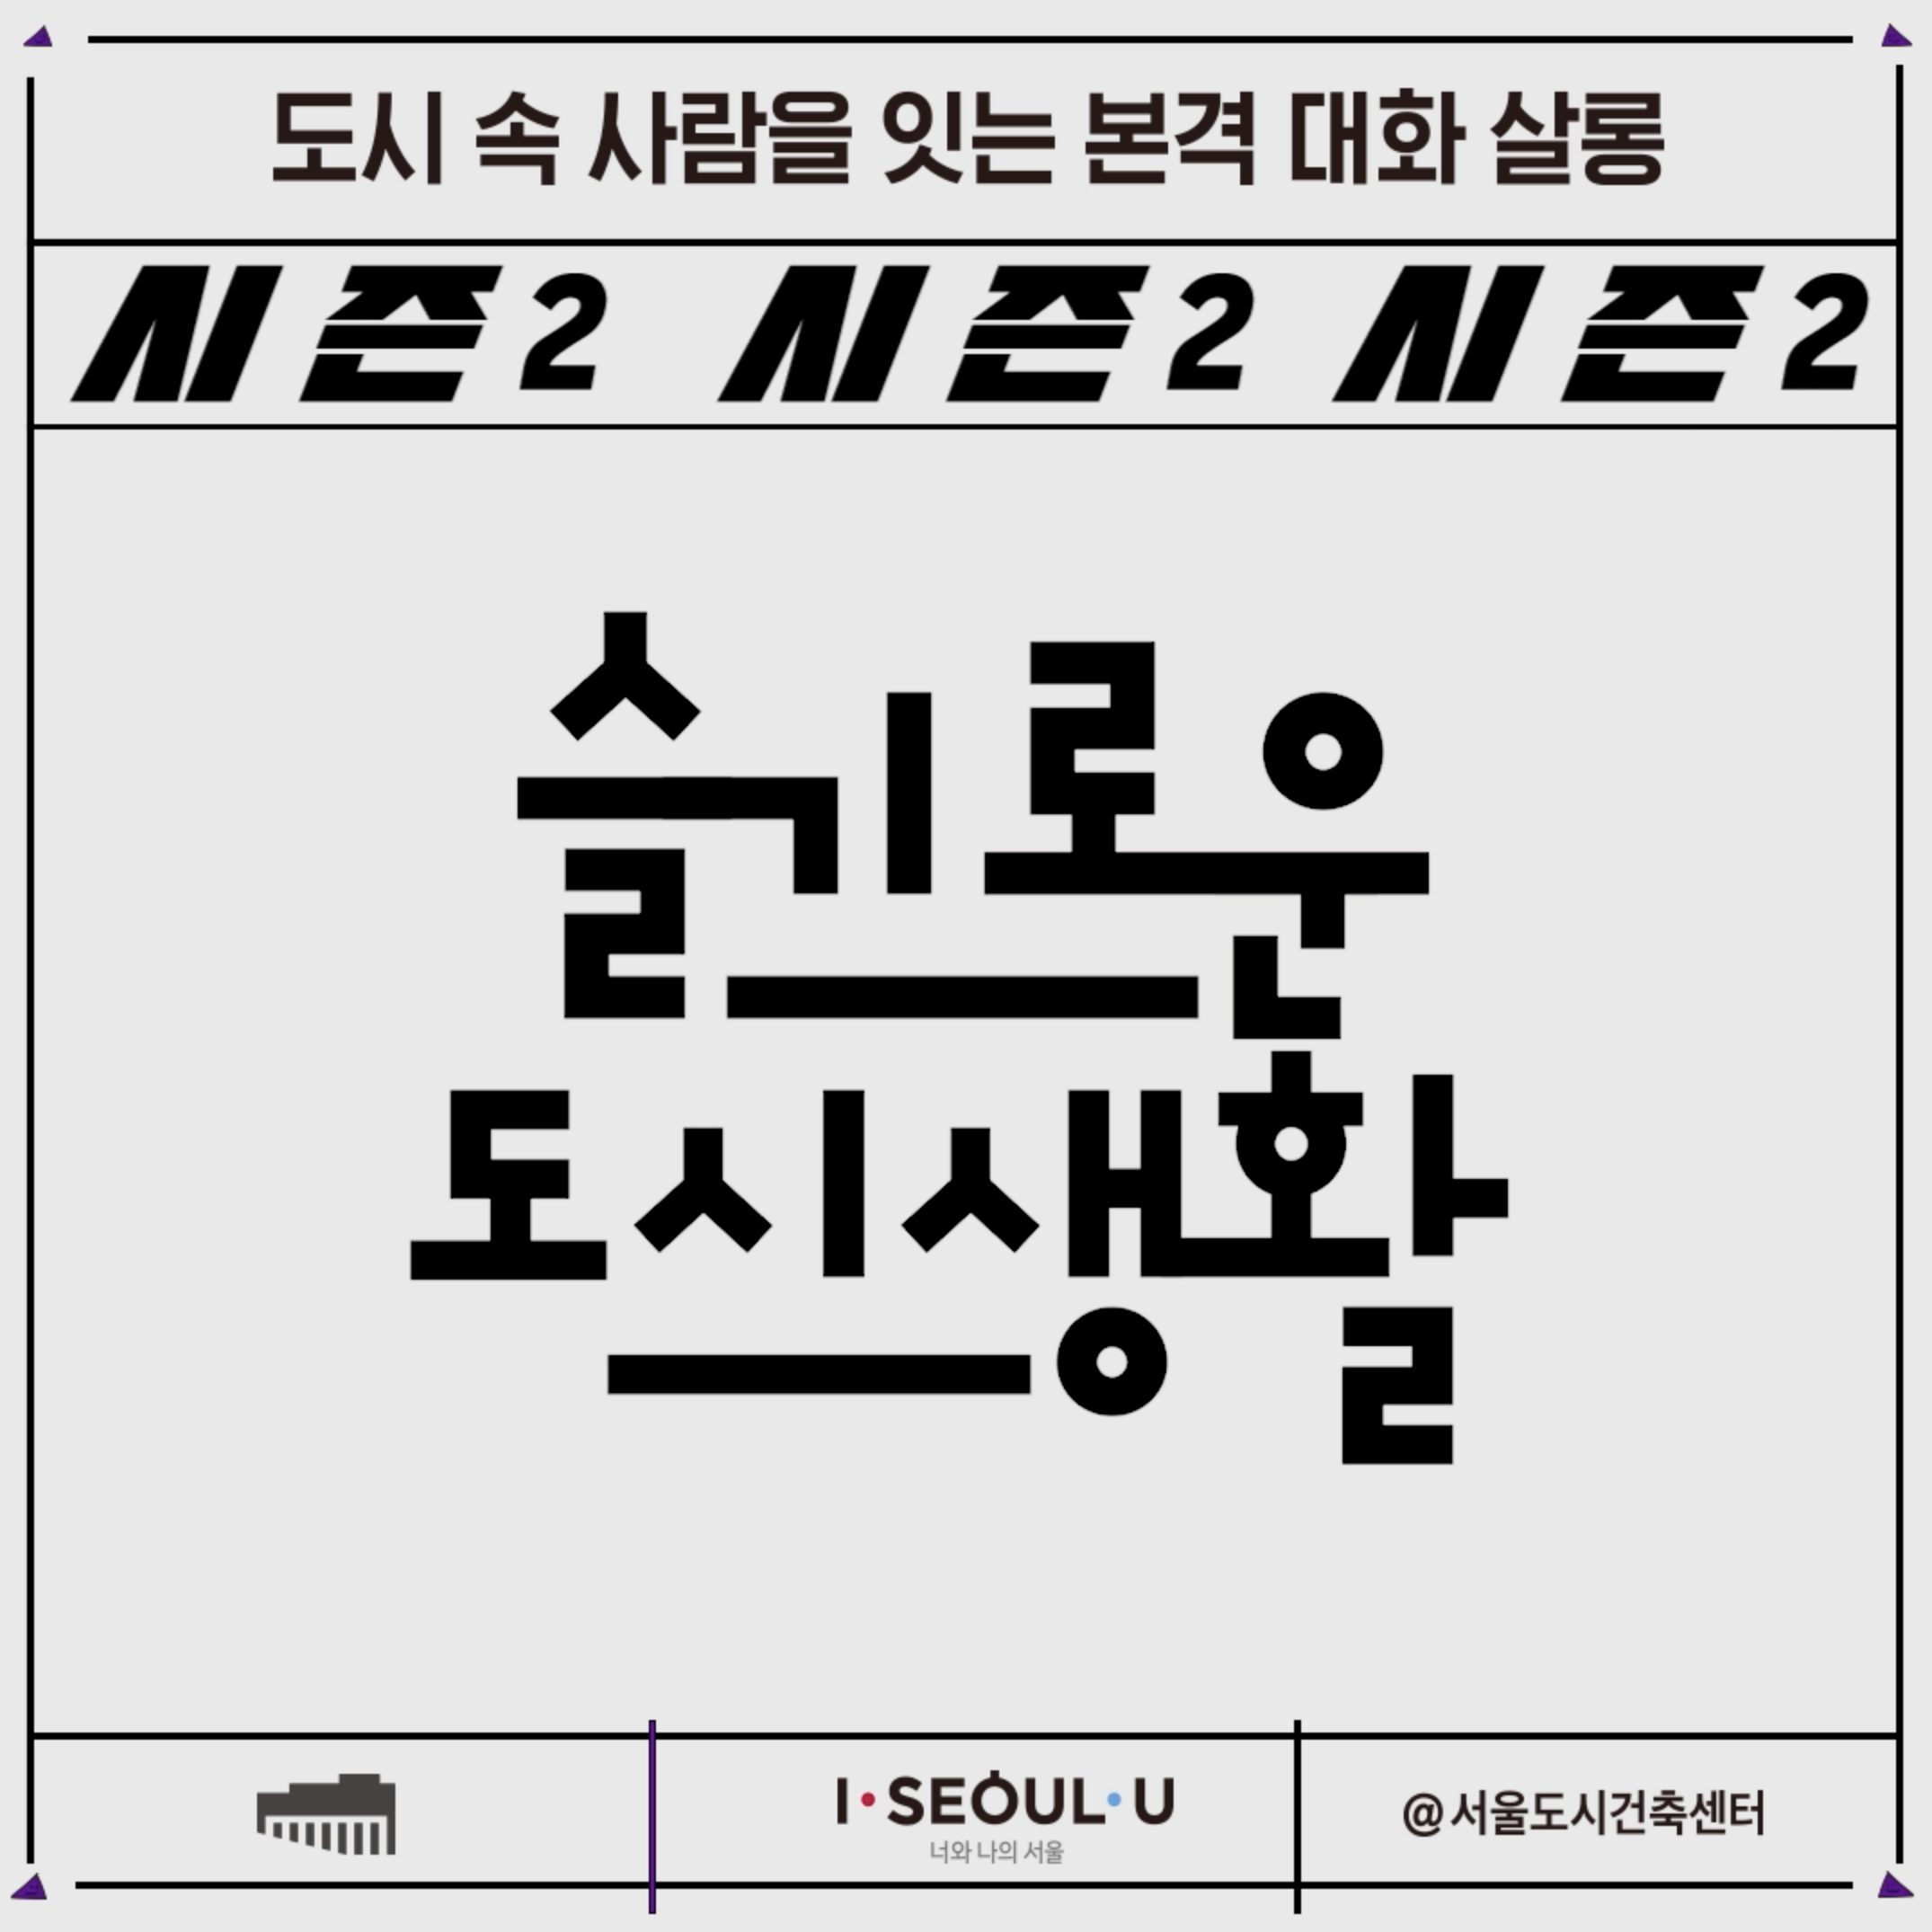 [슬기로운 도시생활] 시즌 2: 지금의 서울, 공유와 주거